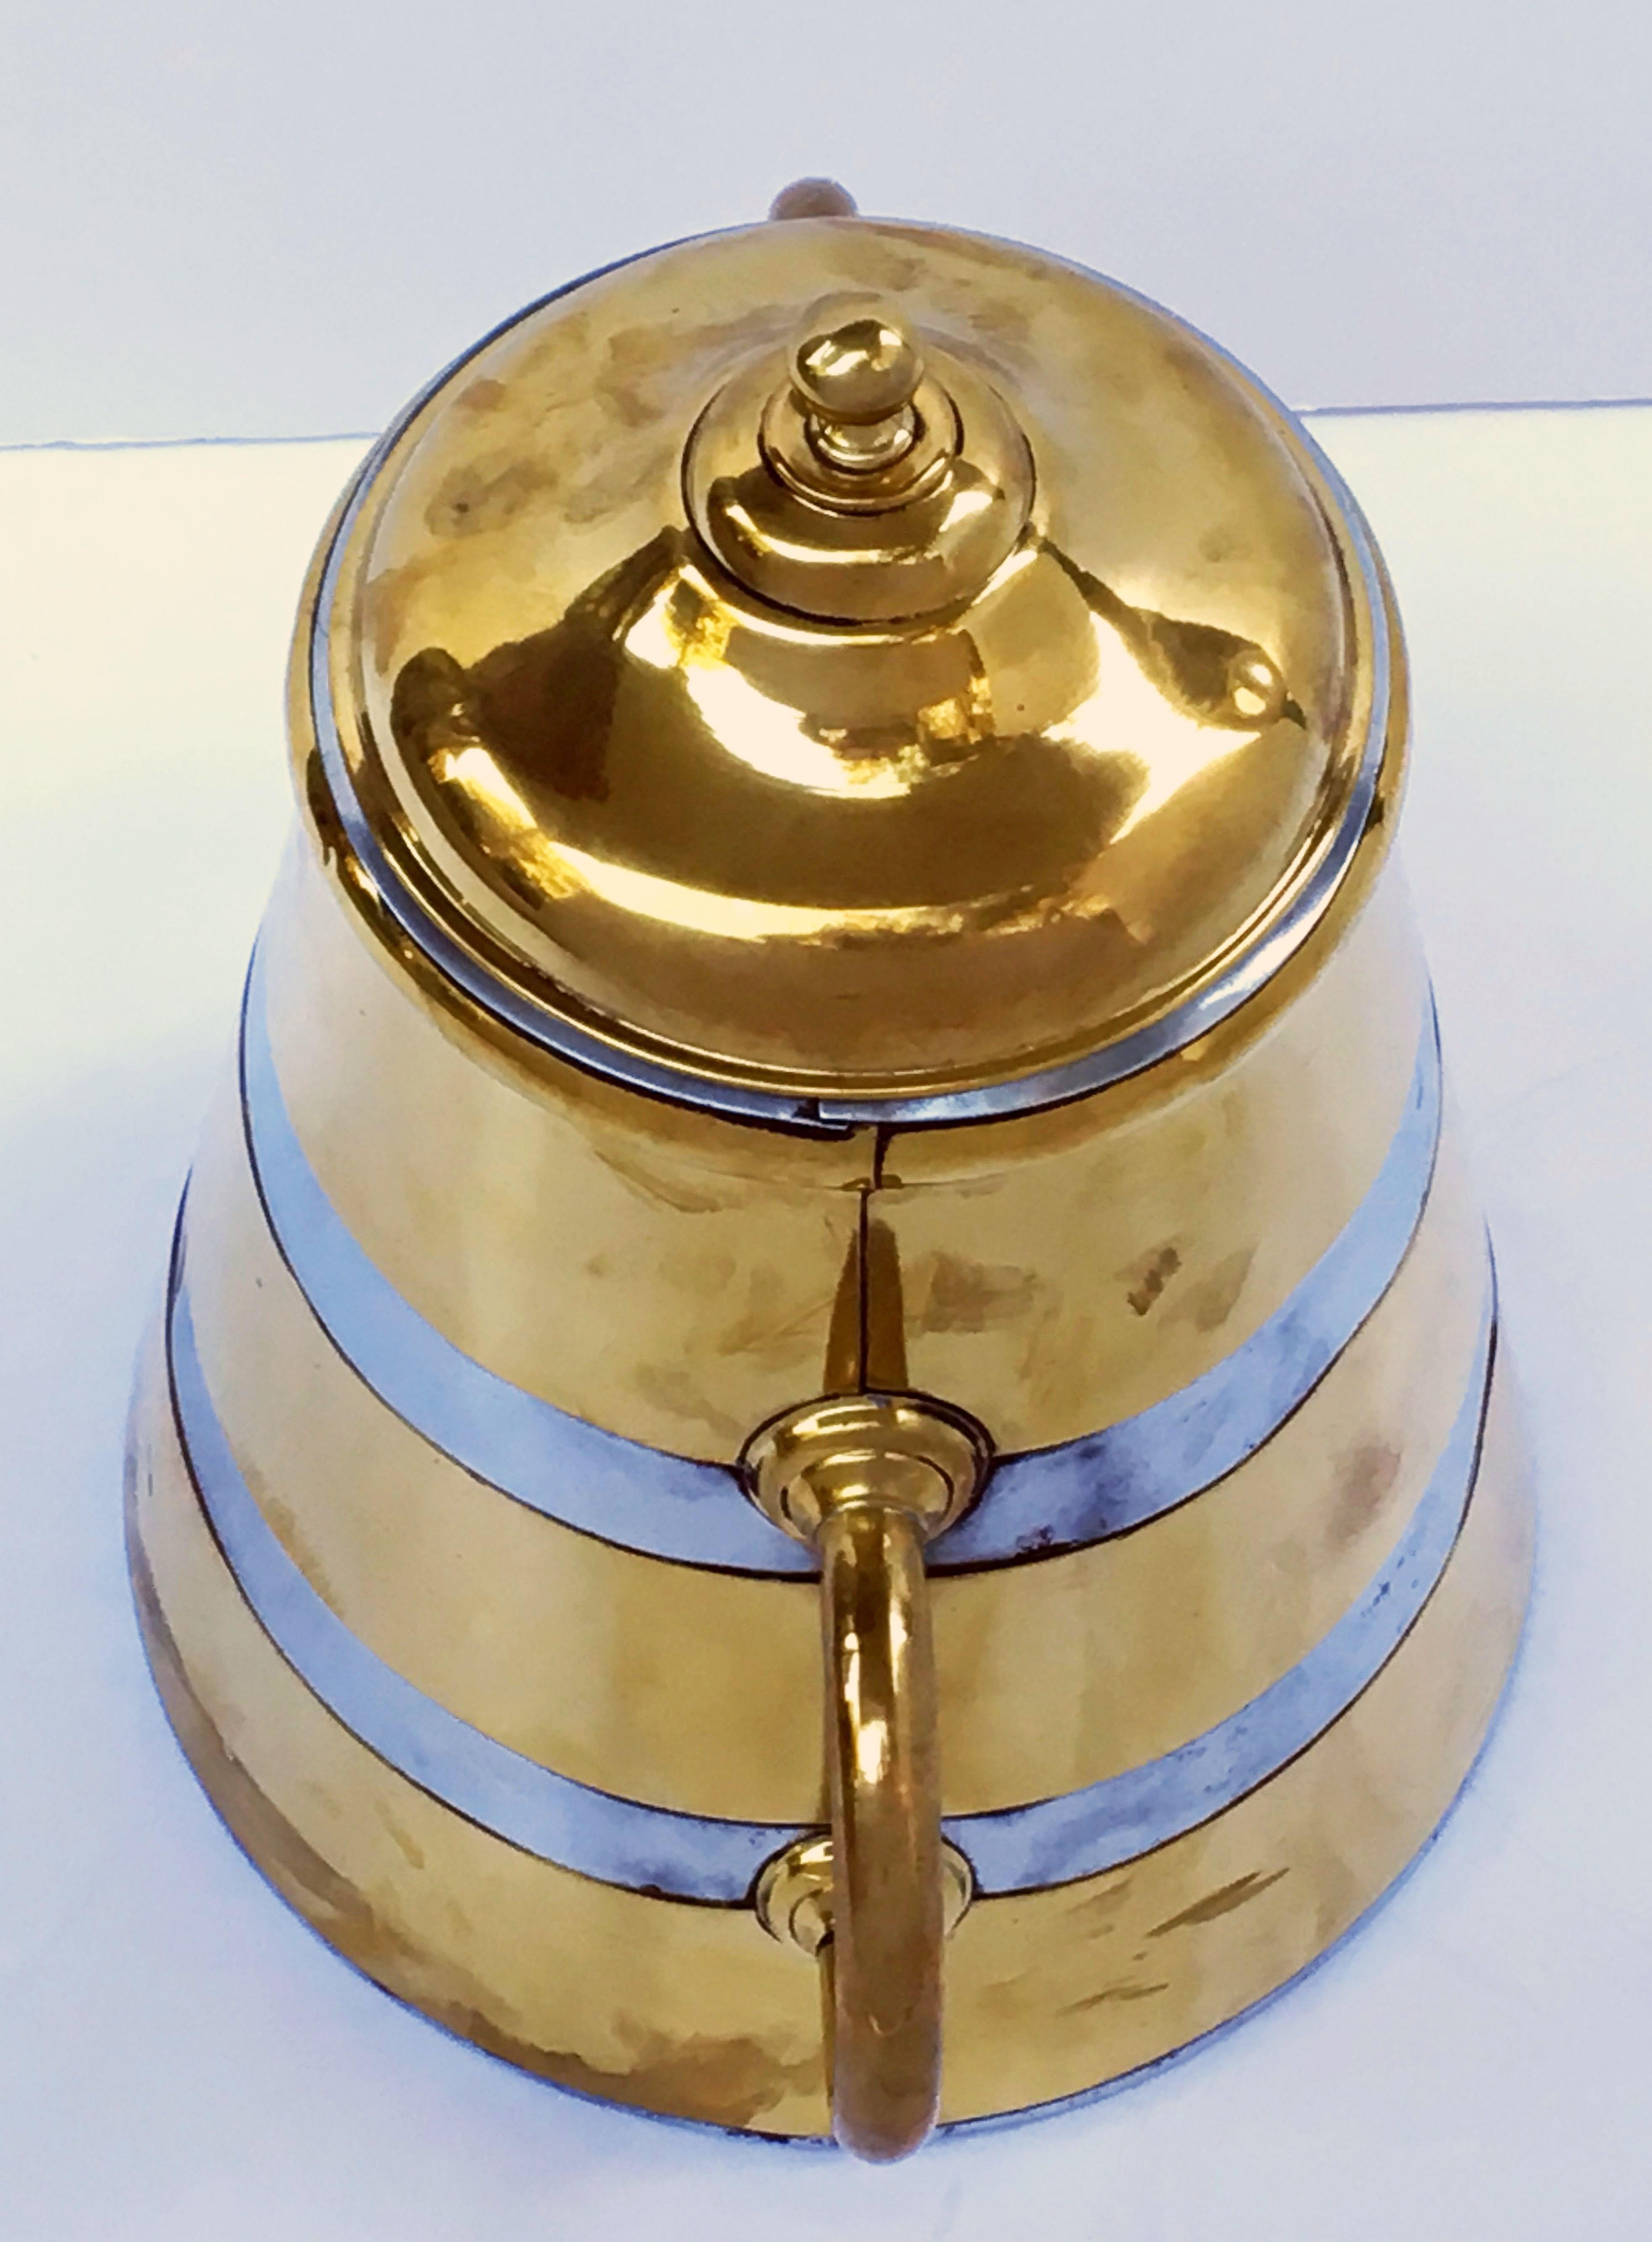 Zylindrische Shop-Behälter aus Messing und Zinn, 'Individly Priced' (Metall)